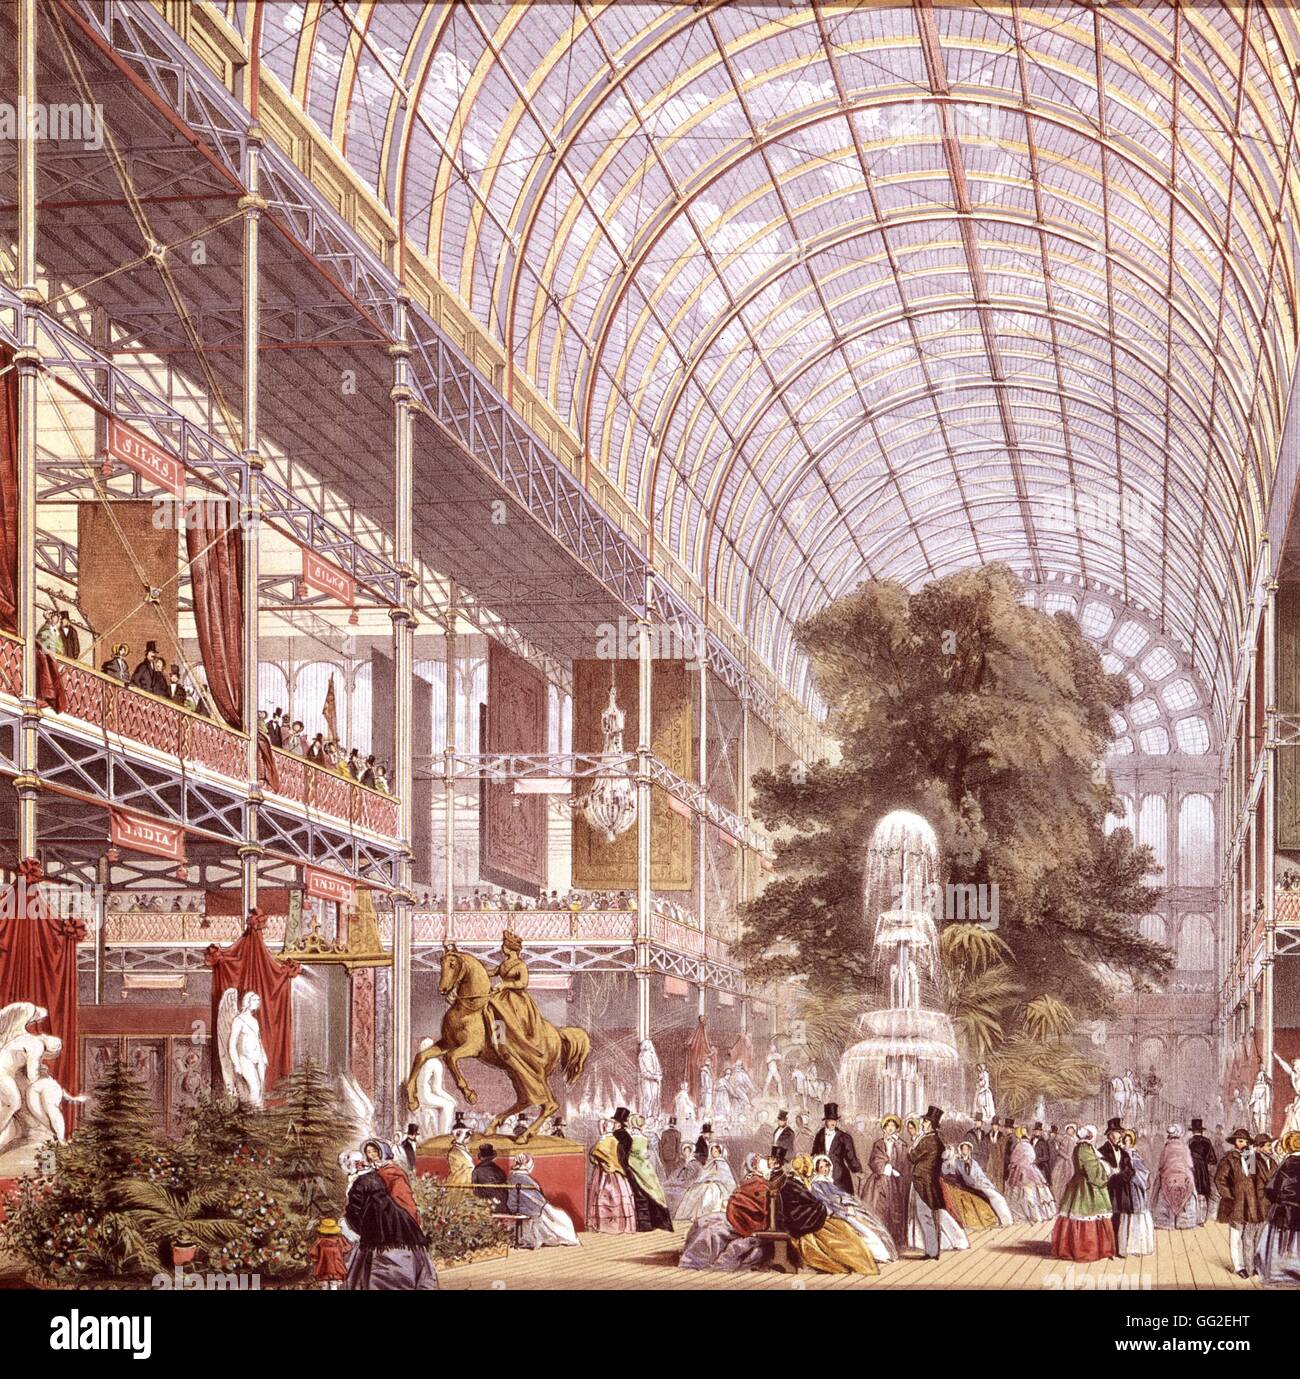 La reina Victoria y el Príncipe Alberto inauguró la gran exposición de 1851. El Palacio de Cristal (detalle) 1851 Londres, Inglaterra, el museo Victoria y Albert Foto de stock